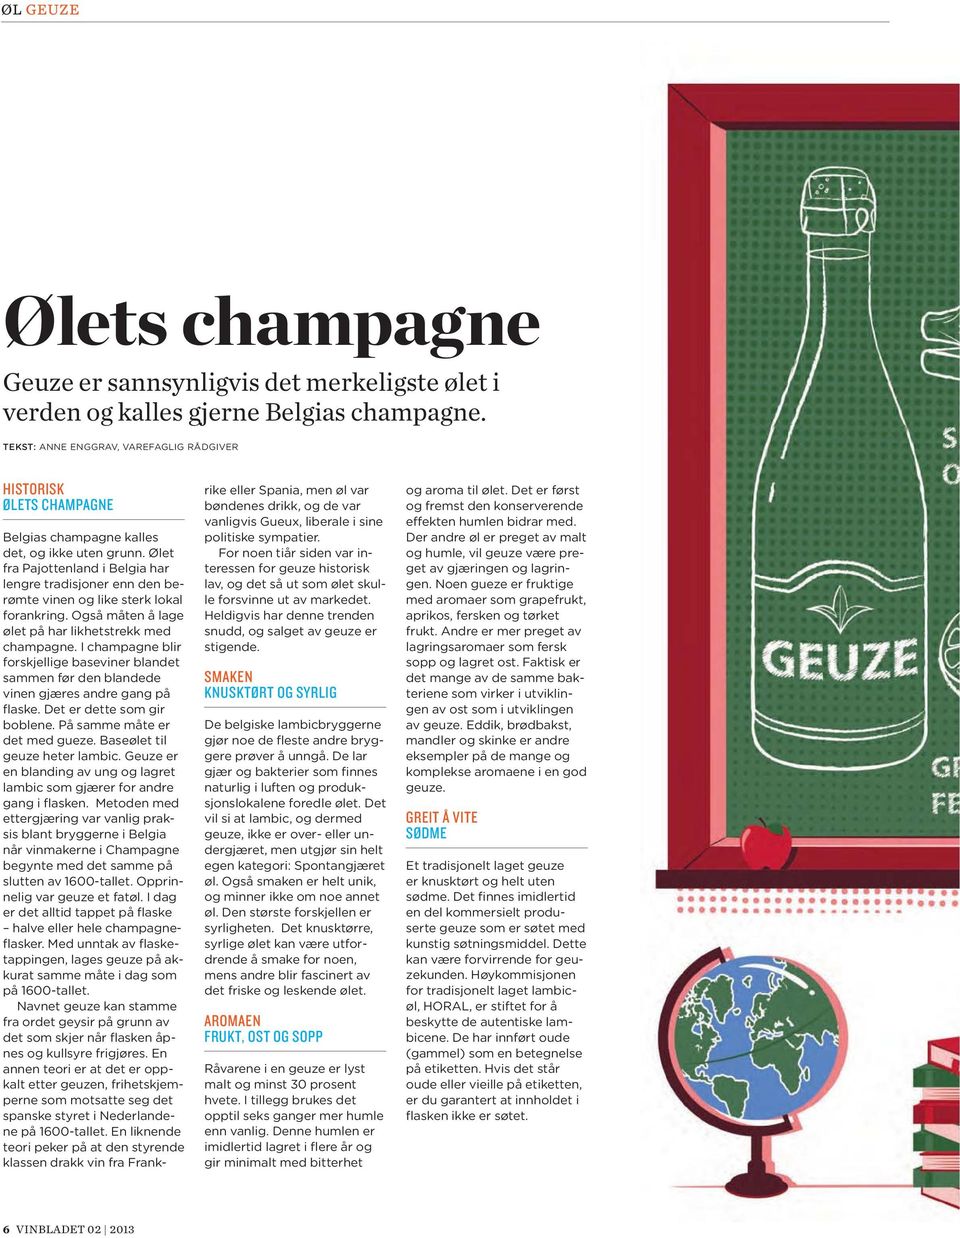 Ølet fra Pajottenland i Belgia har lengre tradisjoner enn den berømte vinen og like sterk lokal forankring. Også måten å lage ølet på har likhetstrekk med champagne.